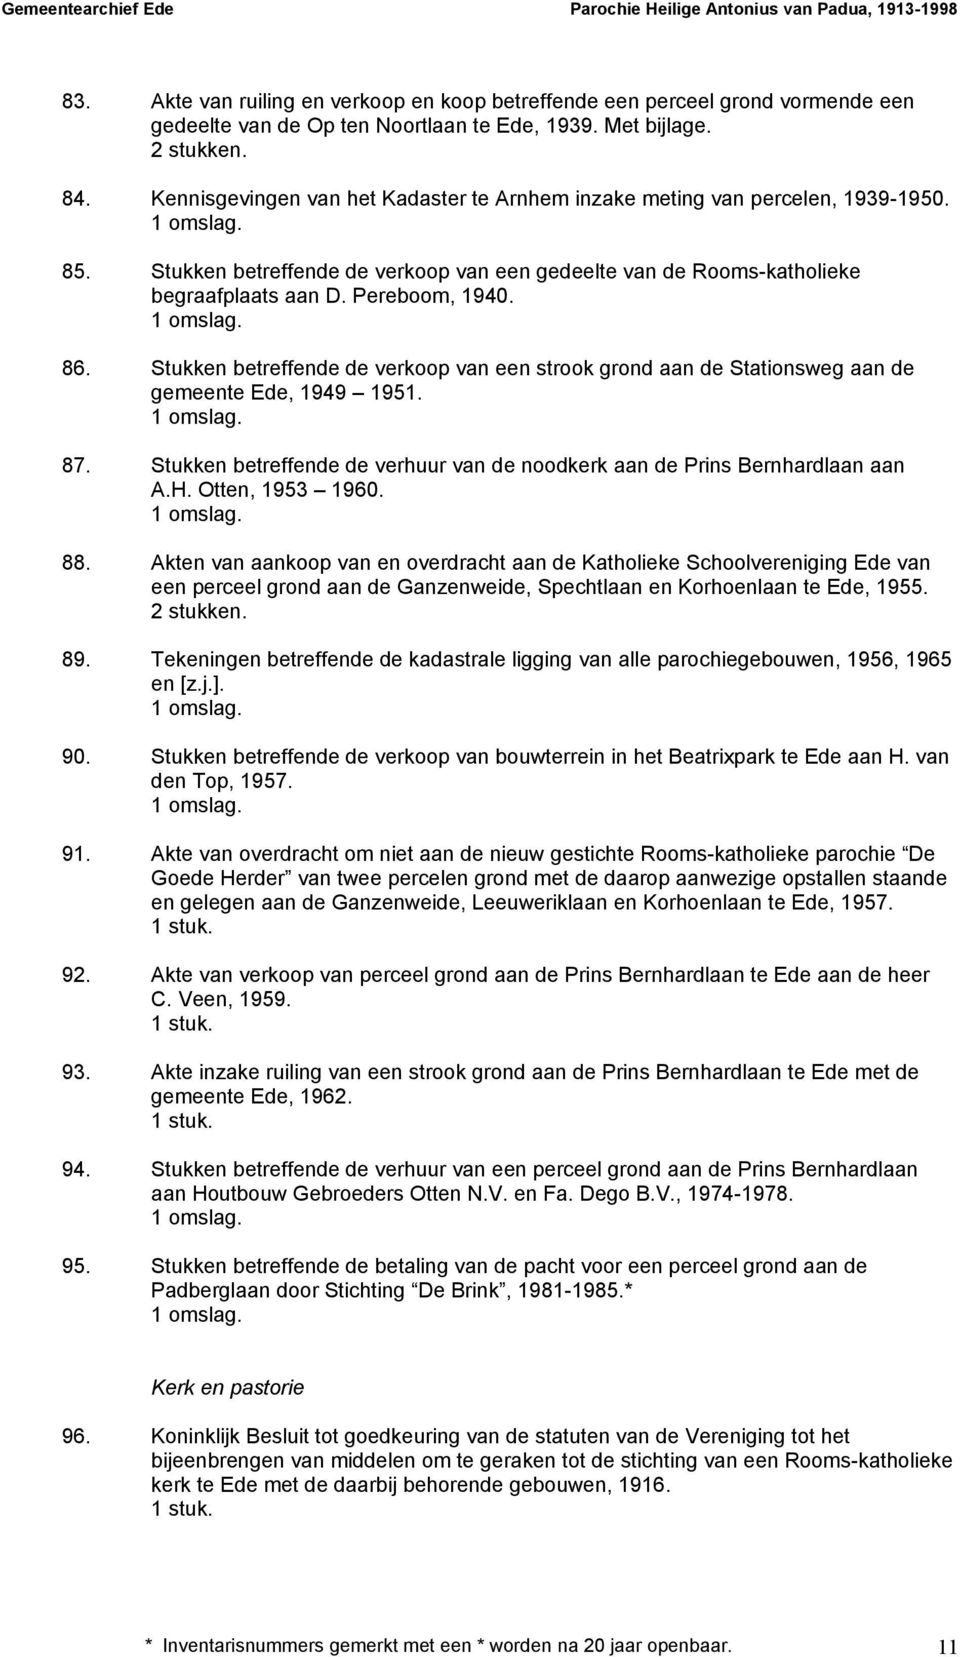 Stukken betreffende de verkoop van een strook grond aan de Stationsweg aan de gemeente Ede, 1949 1951. 87. Stukken betreffende de verhuur van de noodkerk aan de Prins Bernhardlaan aan A.H.